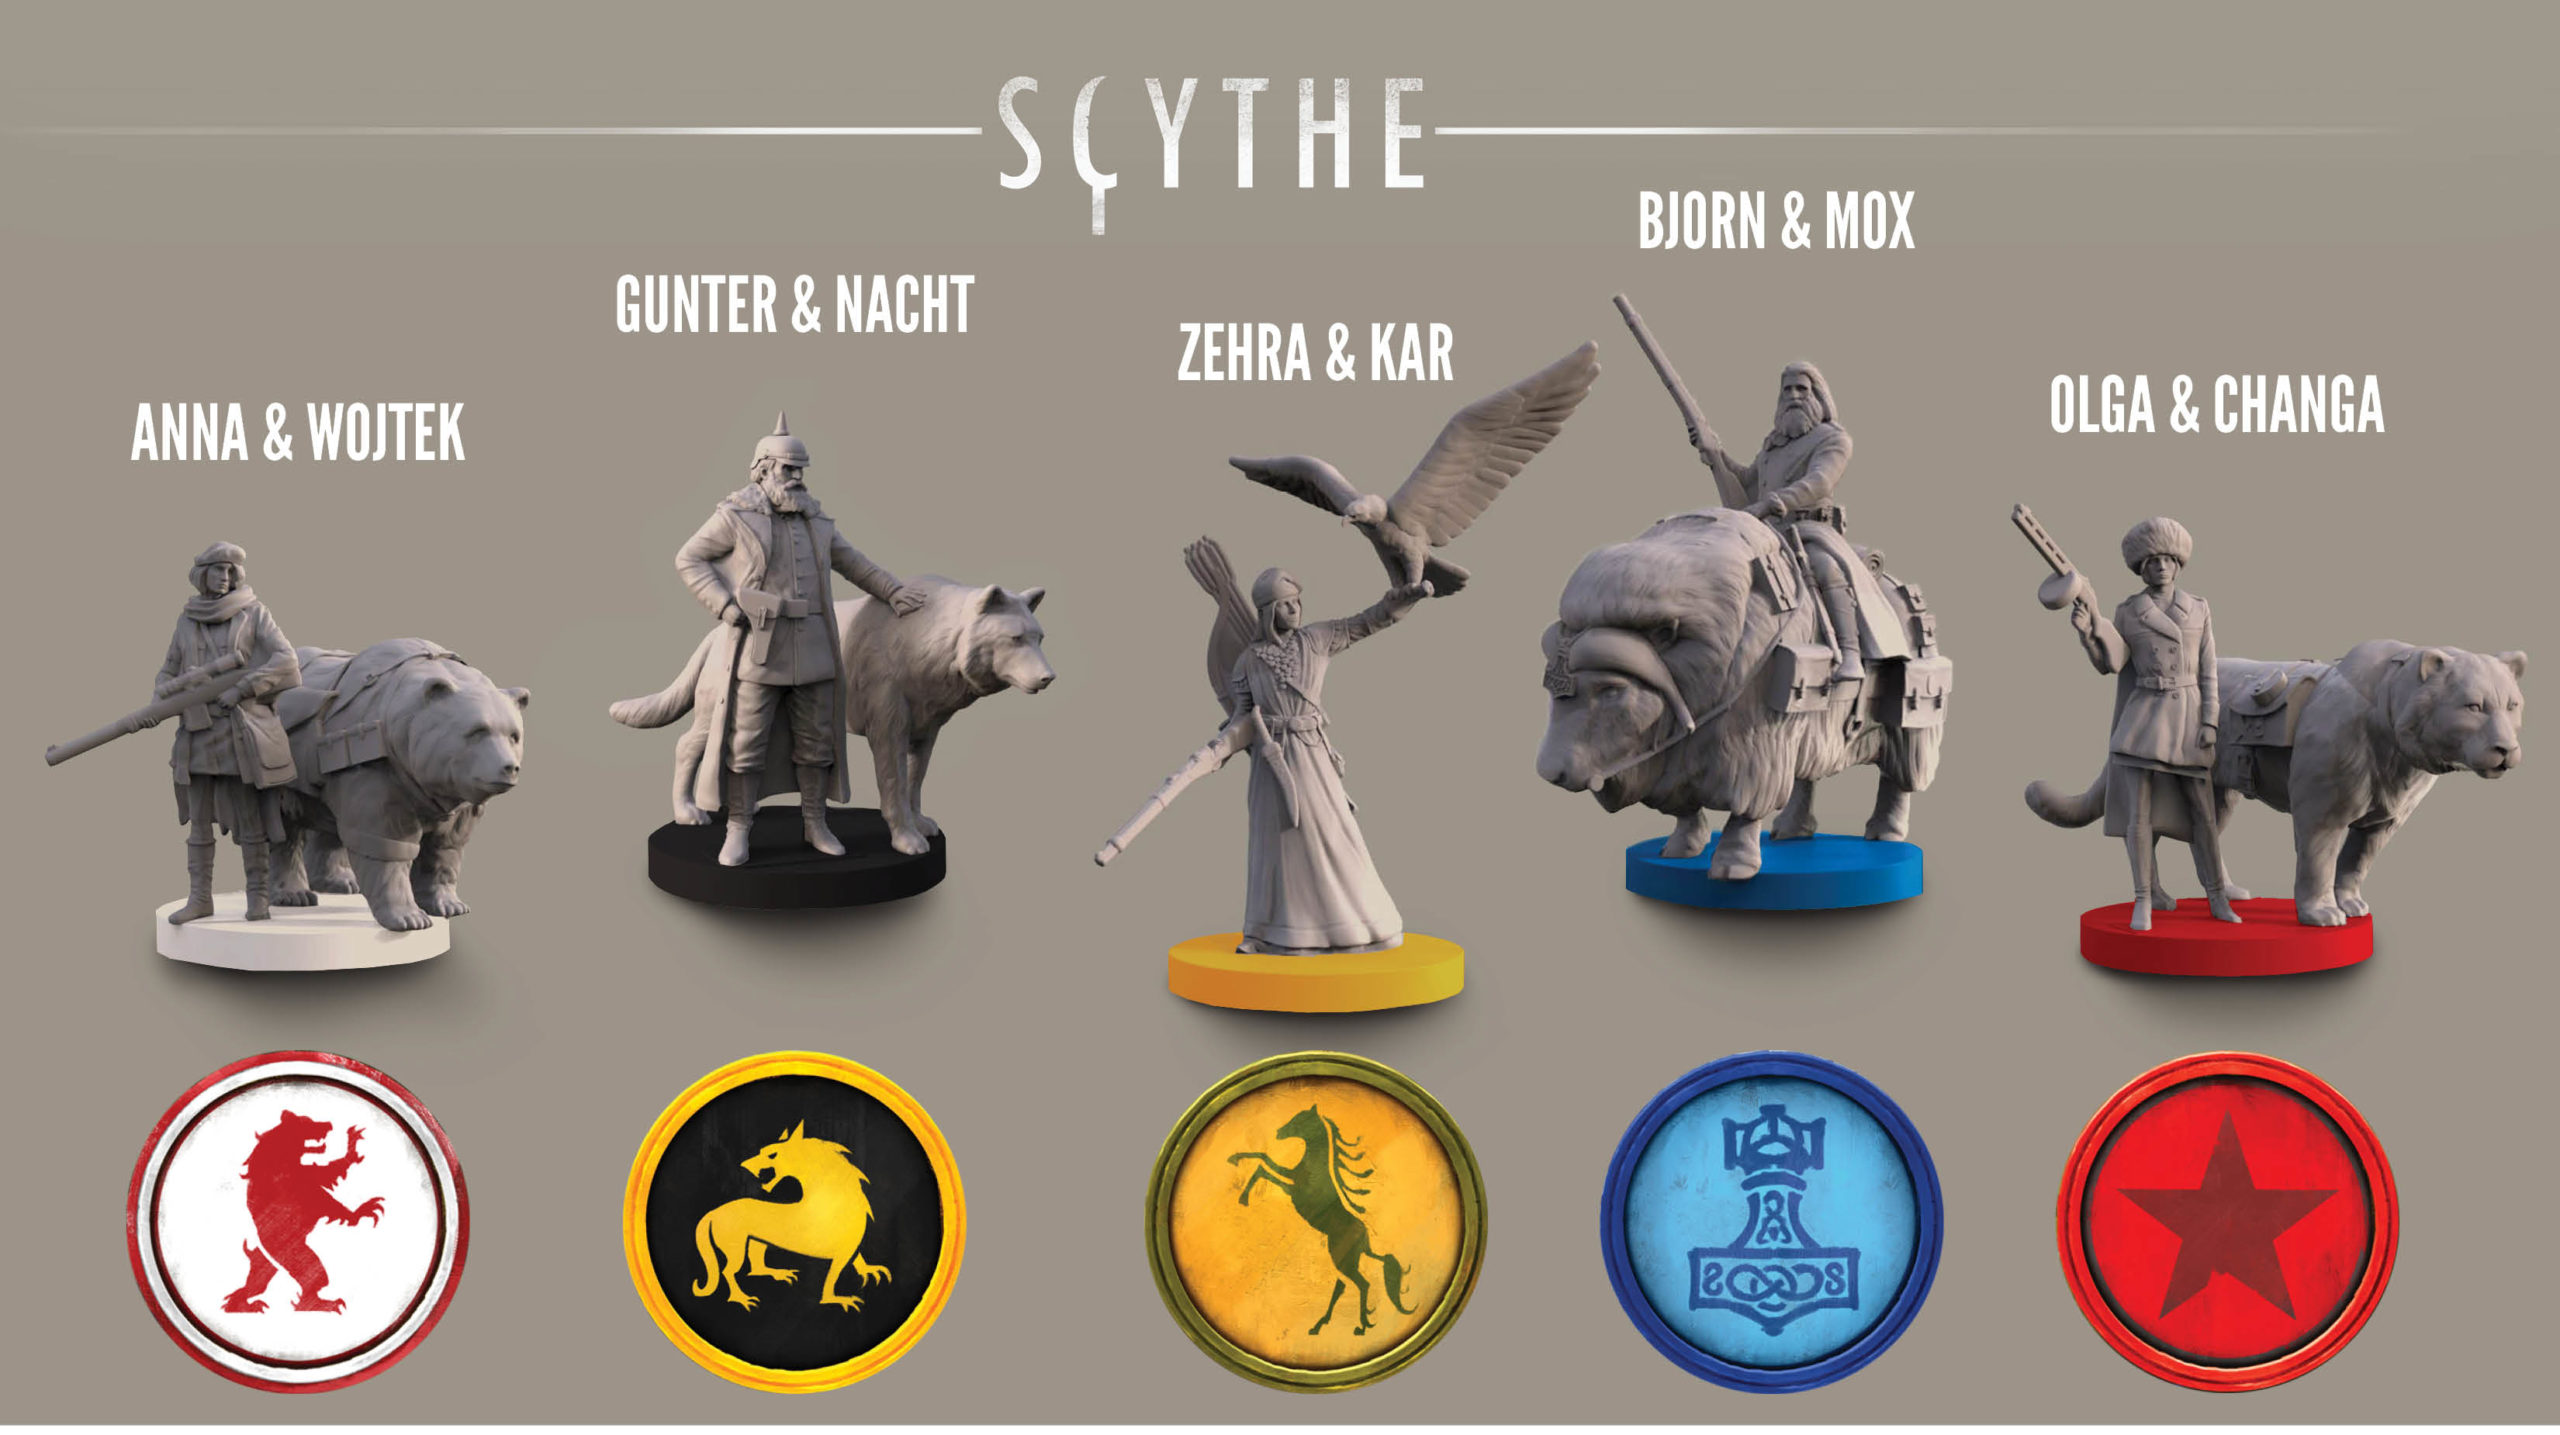 Scythe: The Kotaku Review